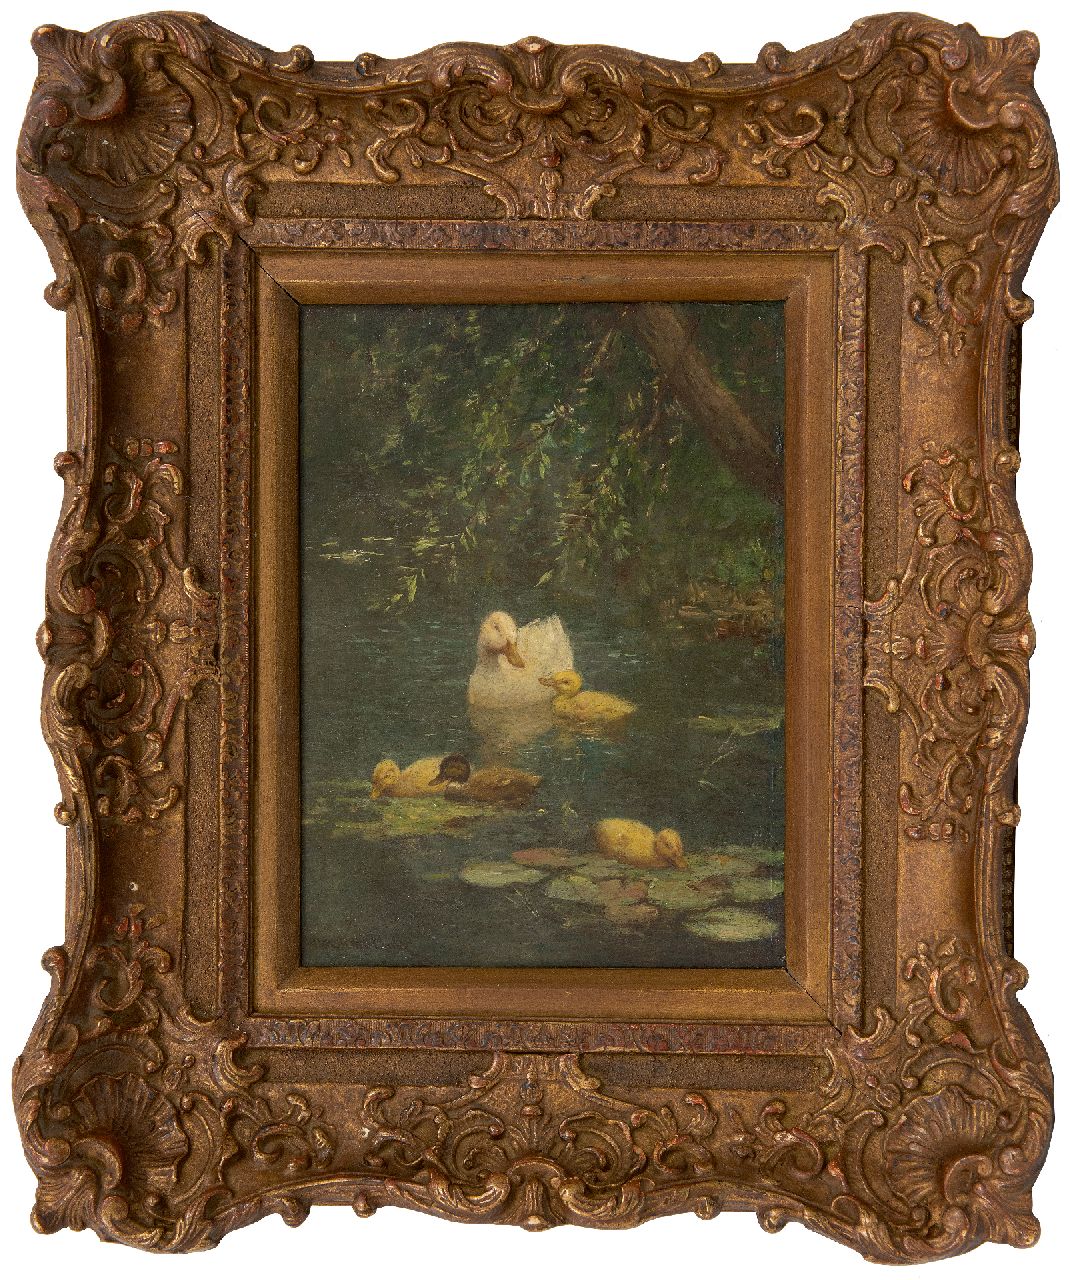 Artz C.D.L.  | 'Constant' David Ludovic Artz | Schilderijen te koop aangeboden | Eend met jongen in de bosvijver, olieverf op paneel 23,8 x 17,8 cm, gesigneerd linksonder